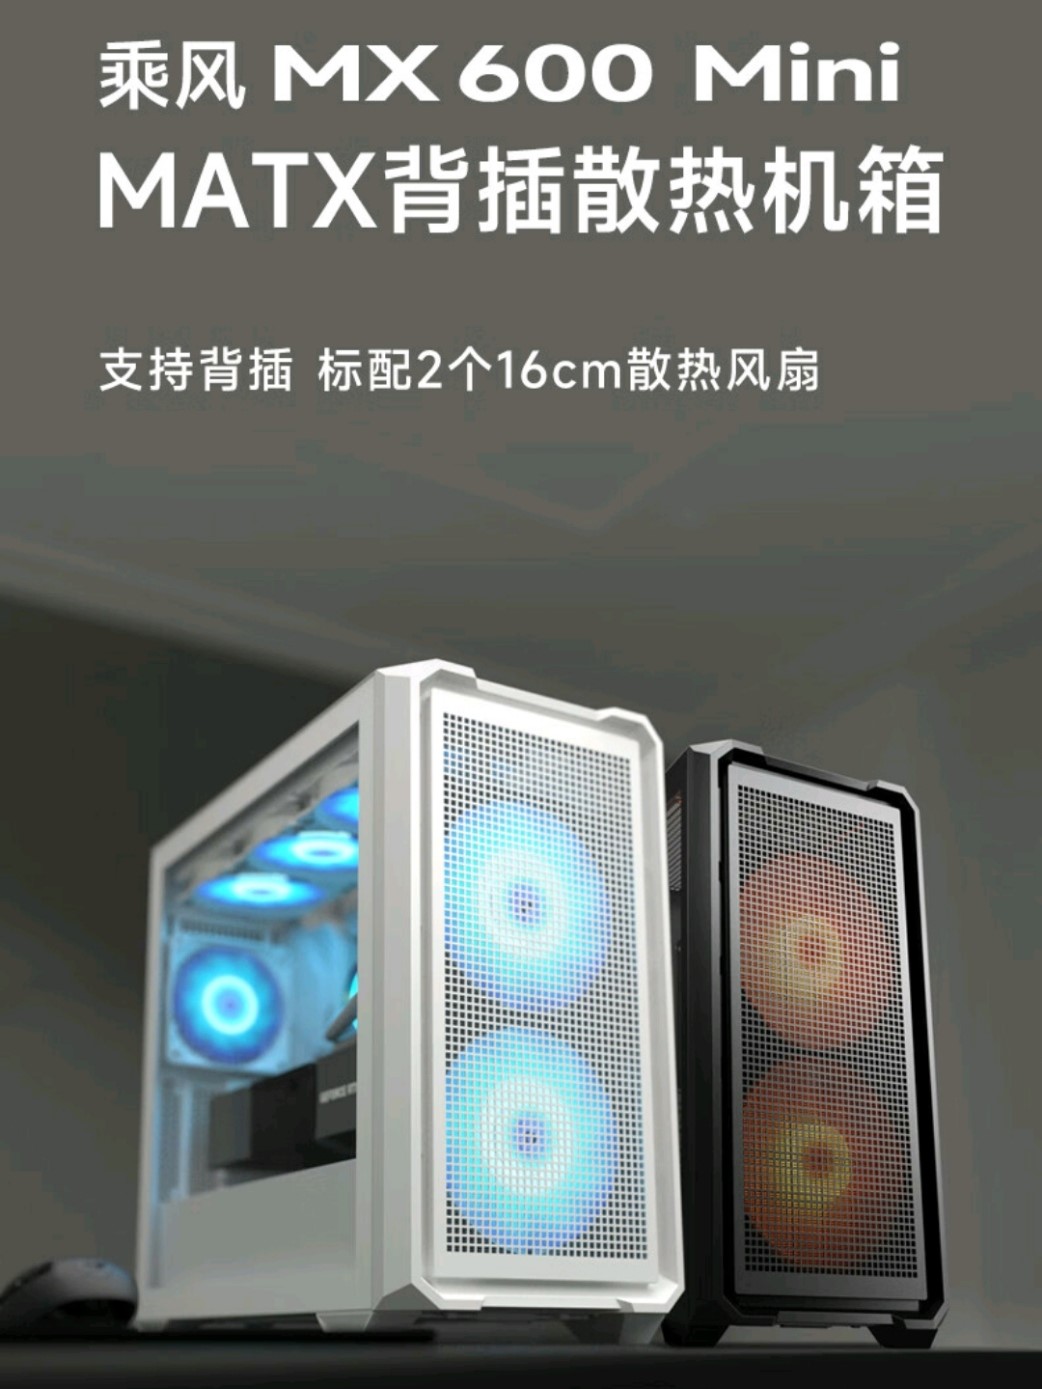 骨伽预热乘风 MX600 Mini 机箱：支持背插 M-ATX 主板，标配双 160 风扇